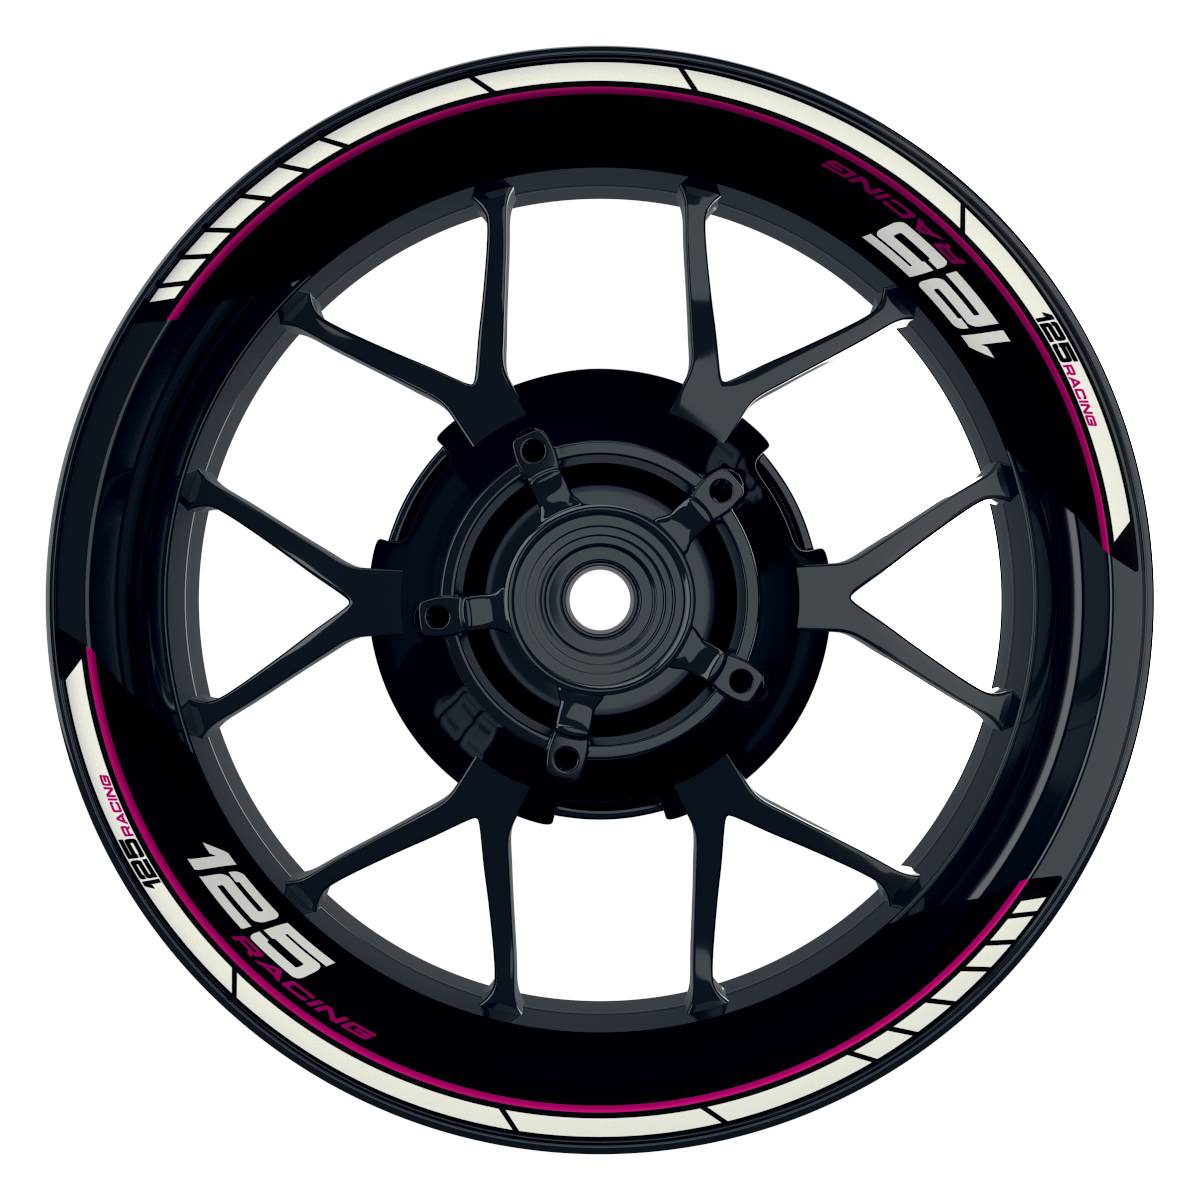 KTM Racing 125 Clean schwarz pink Frontansicht